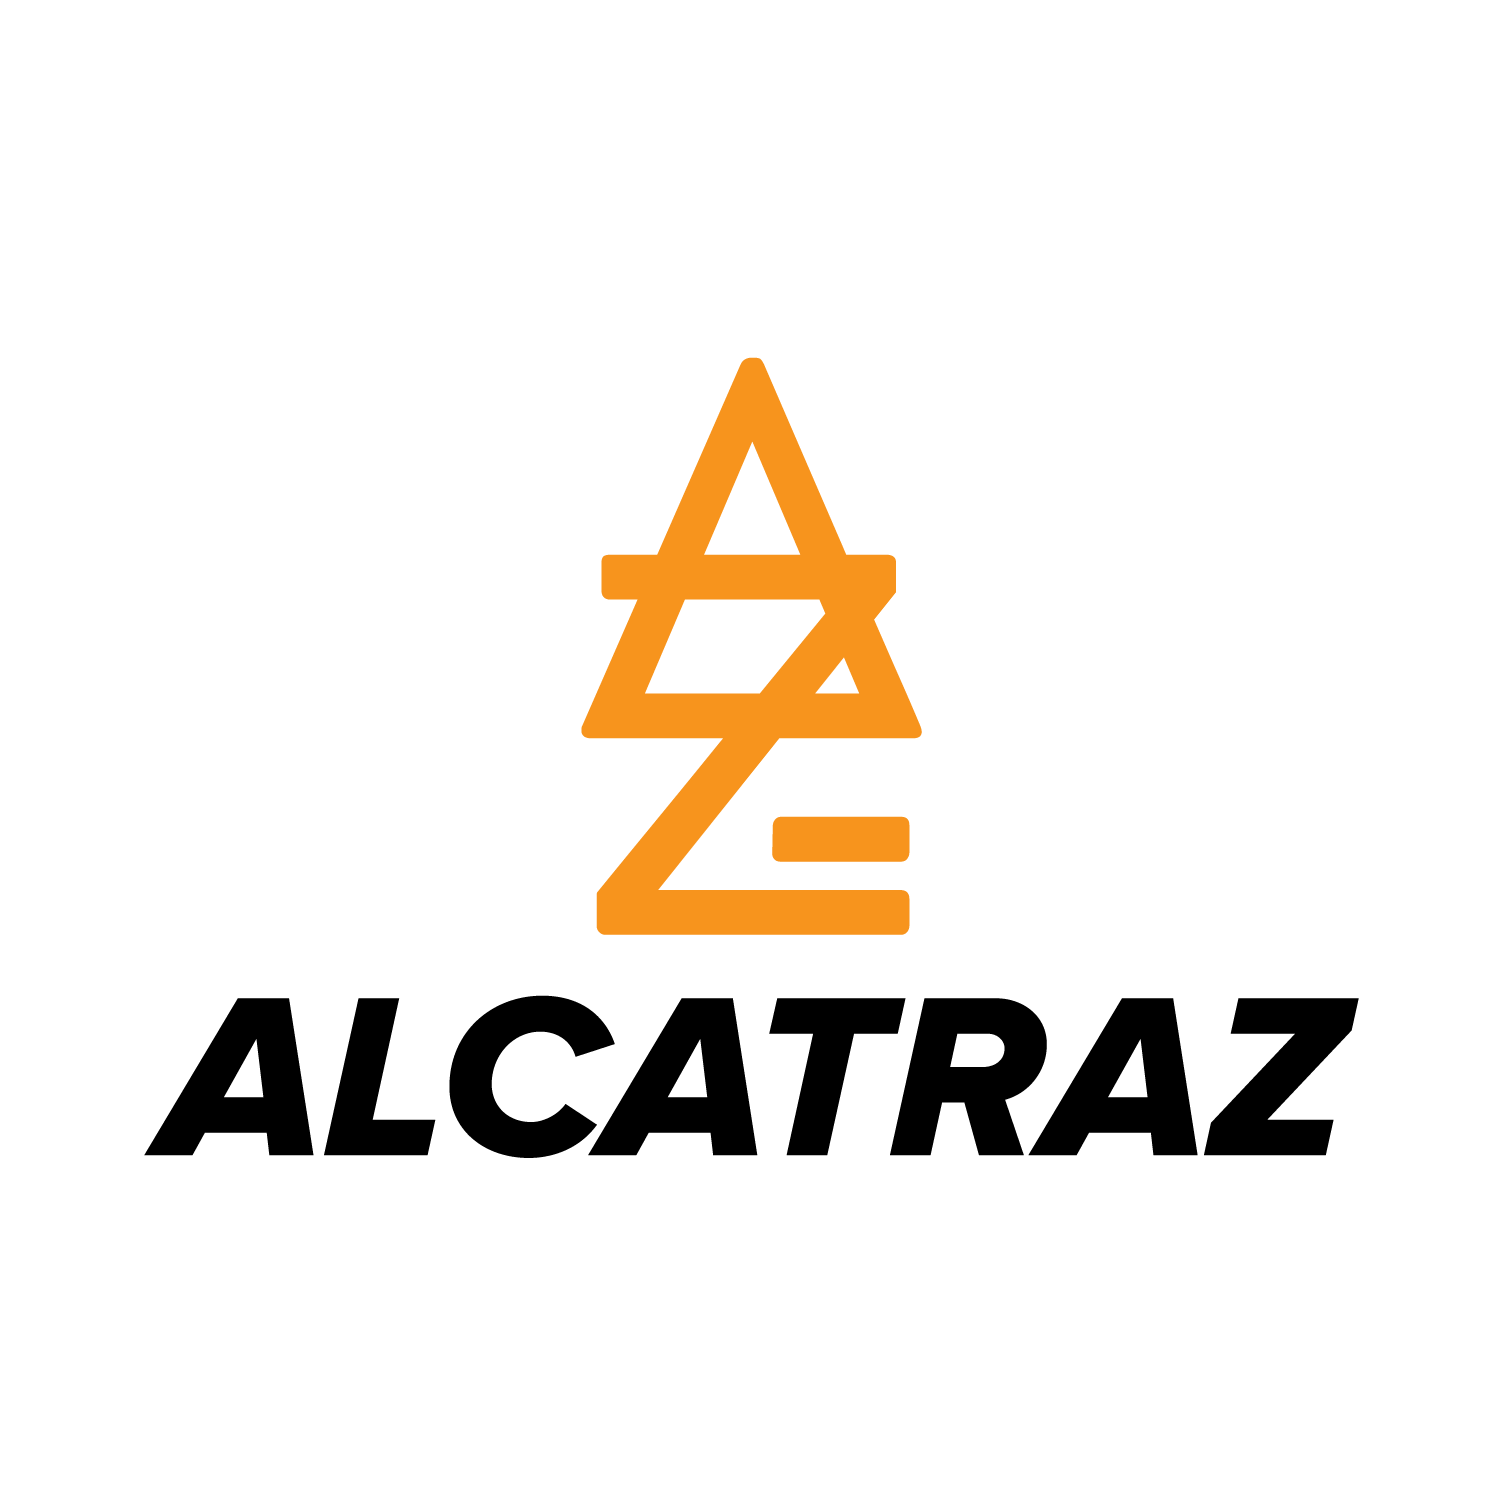 Alcatraz Logo - Get together on Alcatraz